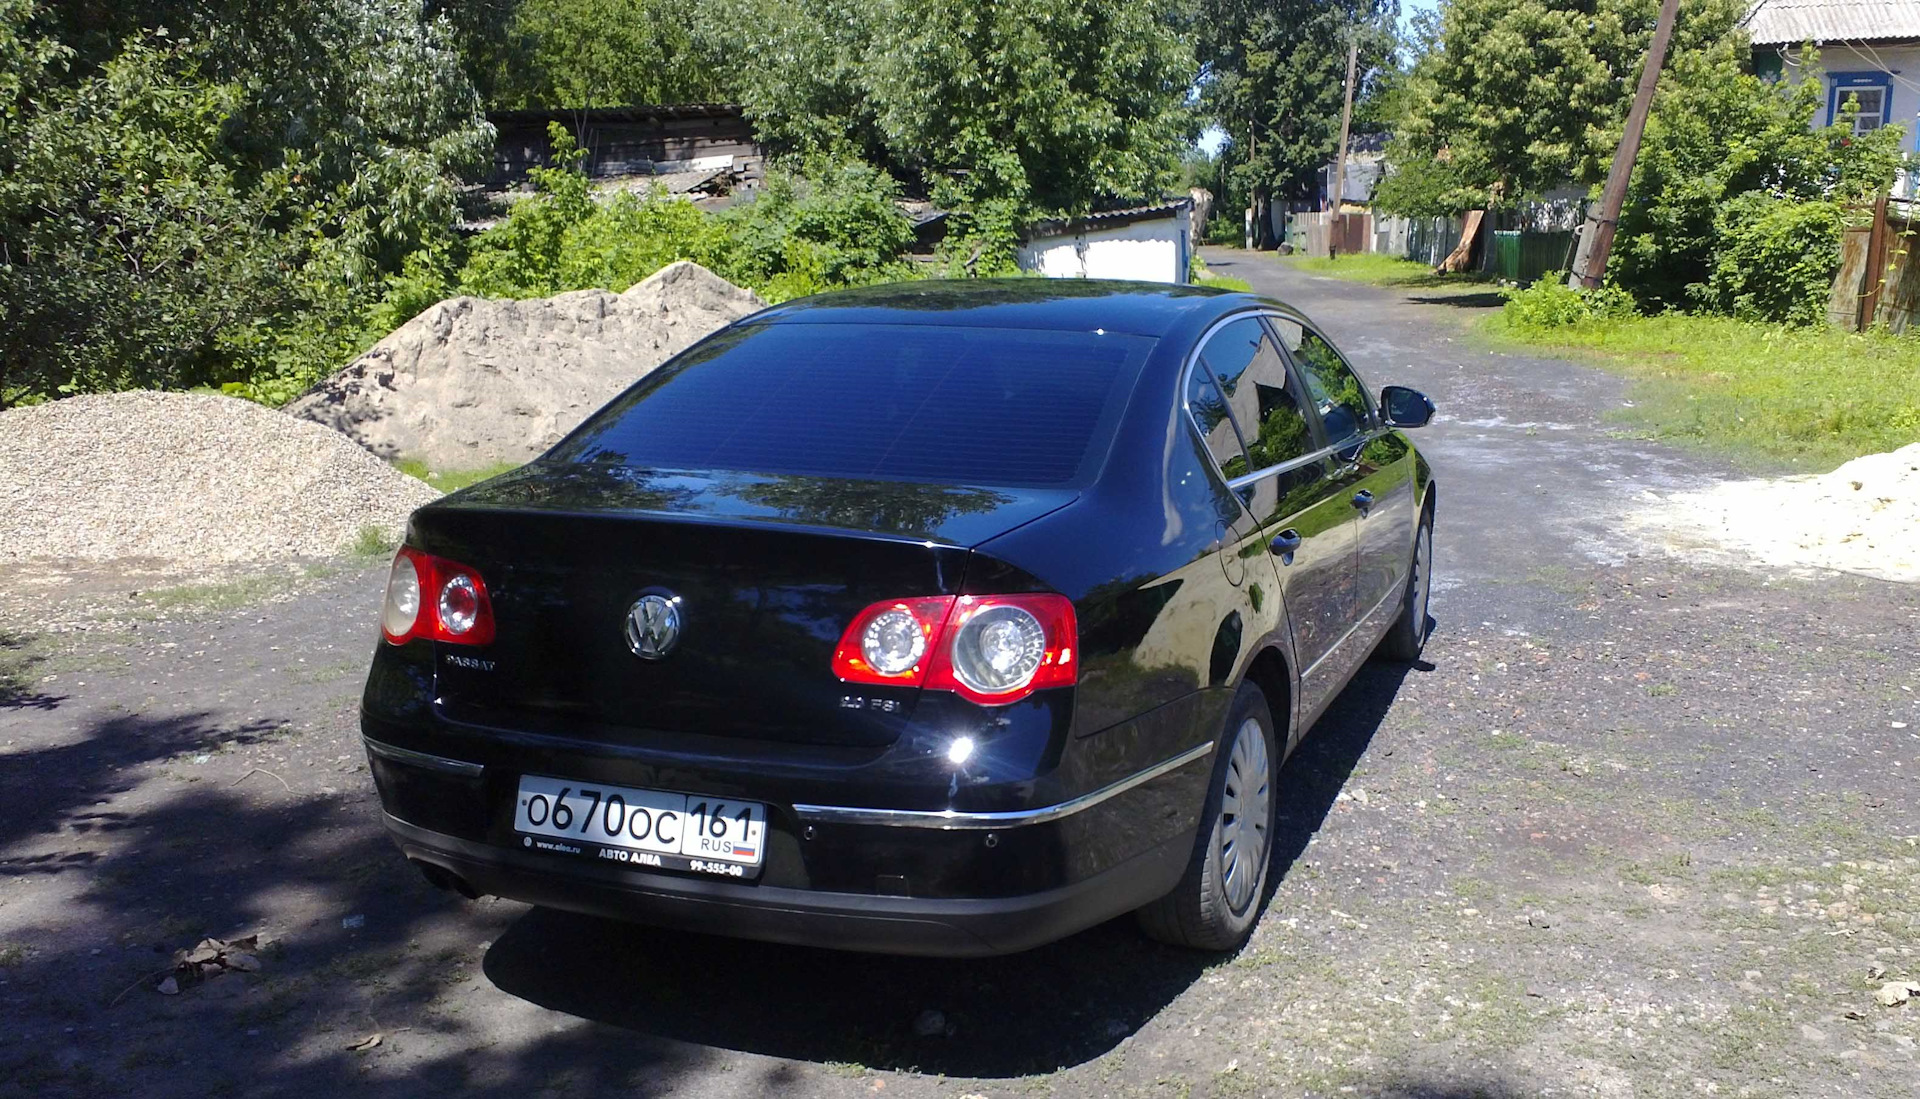 Фольксваген Пассат черный 2010. Volkswagen Passat b6 седан черный 999. Фольксваген Пассат седан черный 2005 года. WV Passat черный 2008. Пассат черный дым